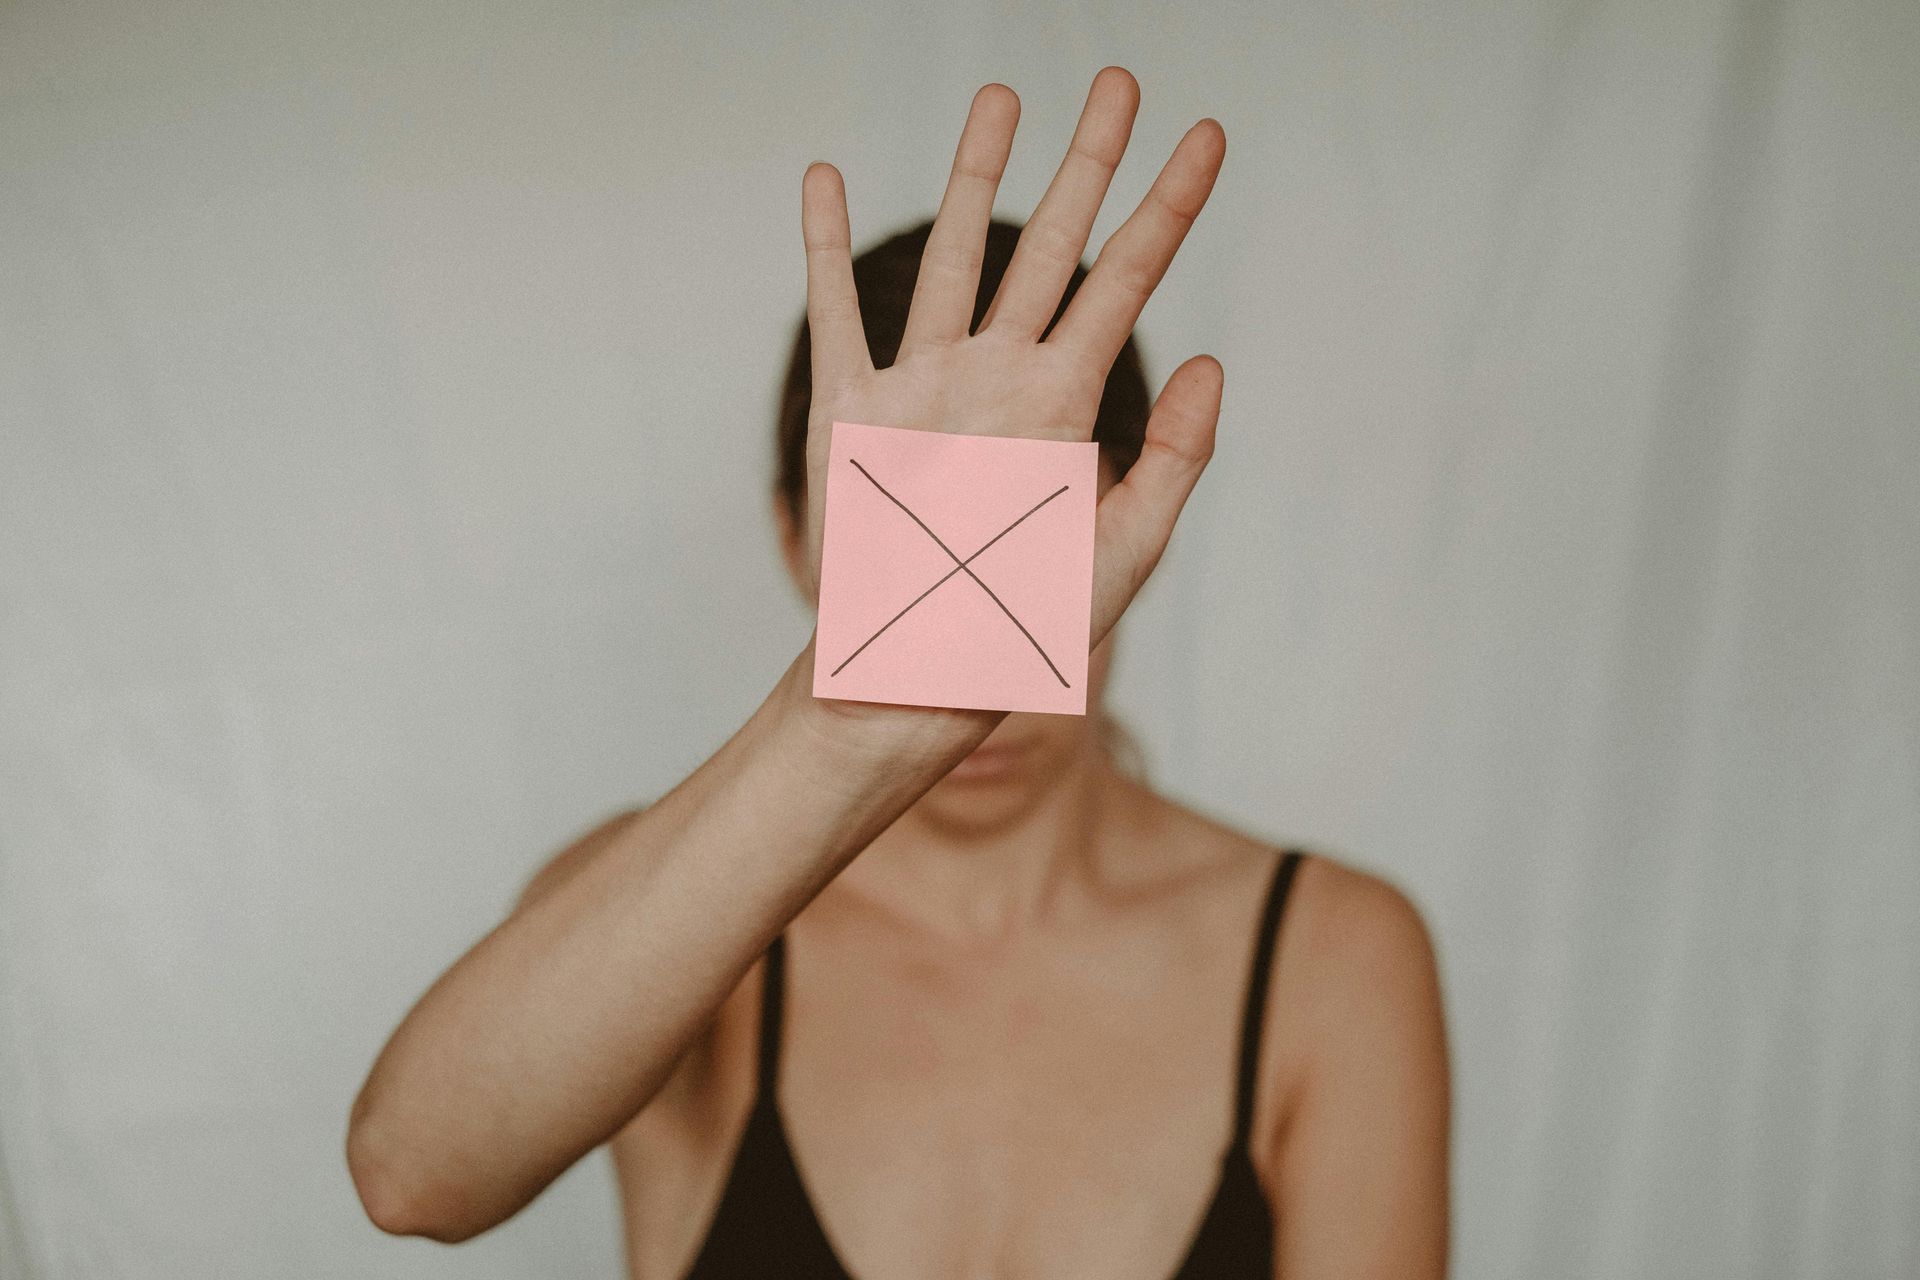 Roze 'geeltje' met een kruis erop. Vastgeplakt op de binnenkant van de rechterhand van een vrouw.